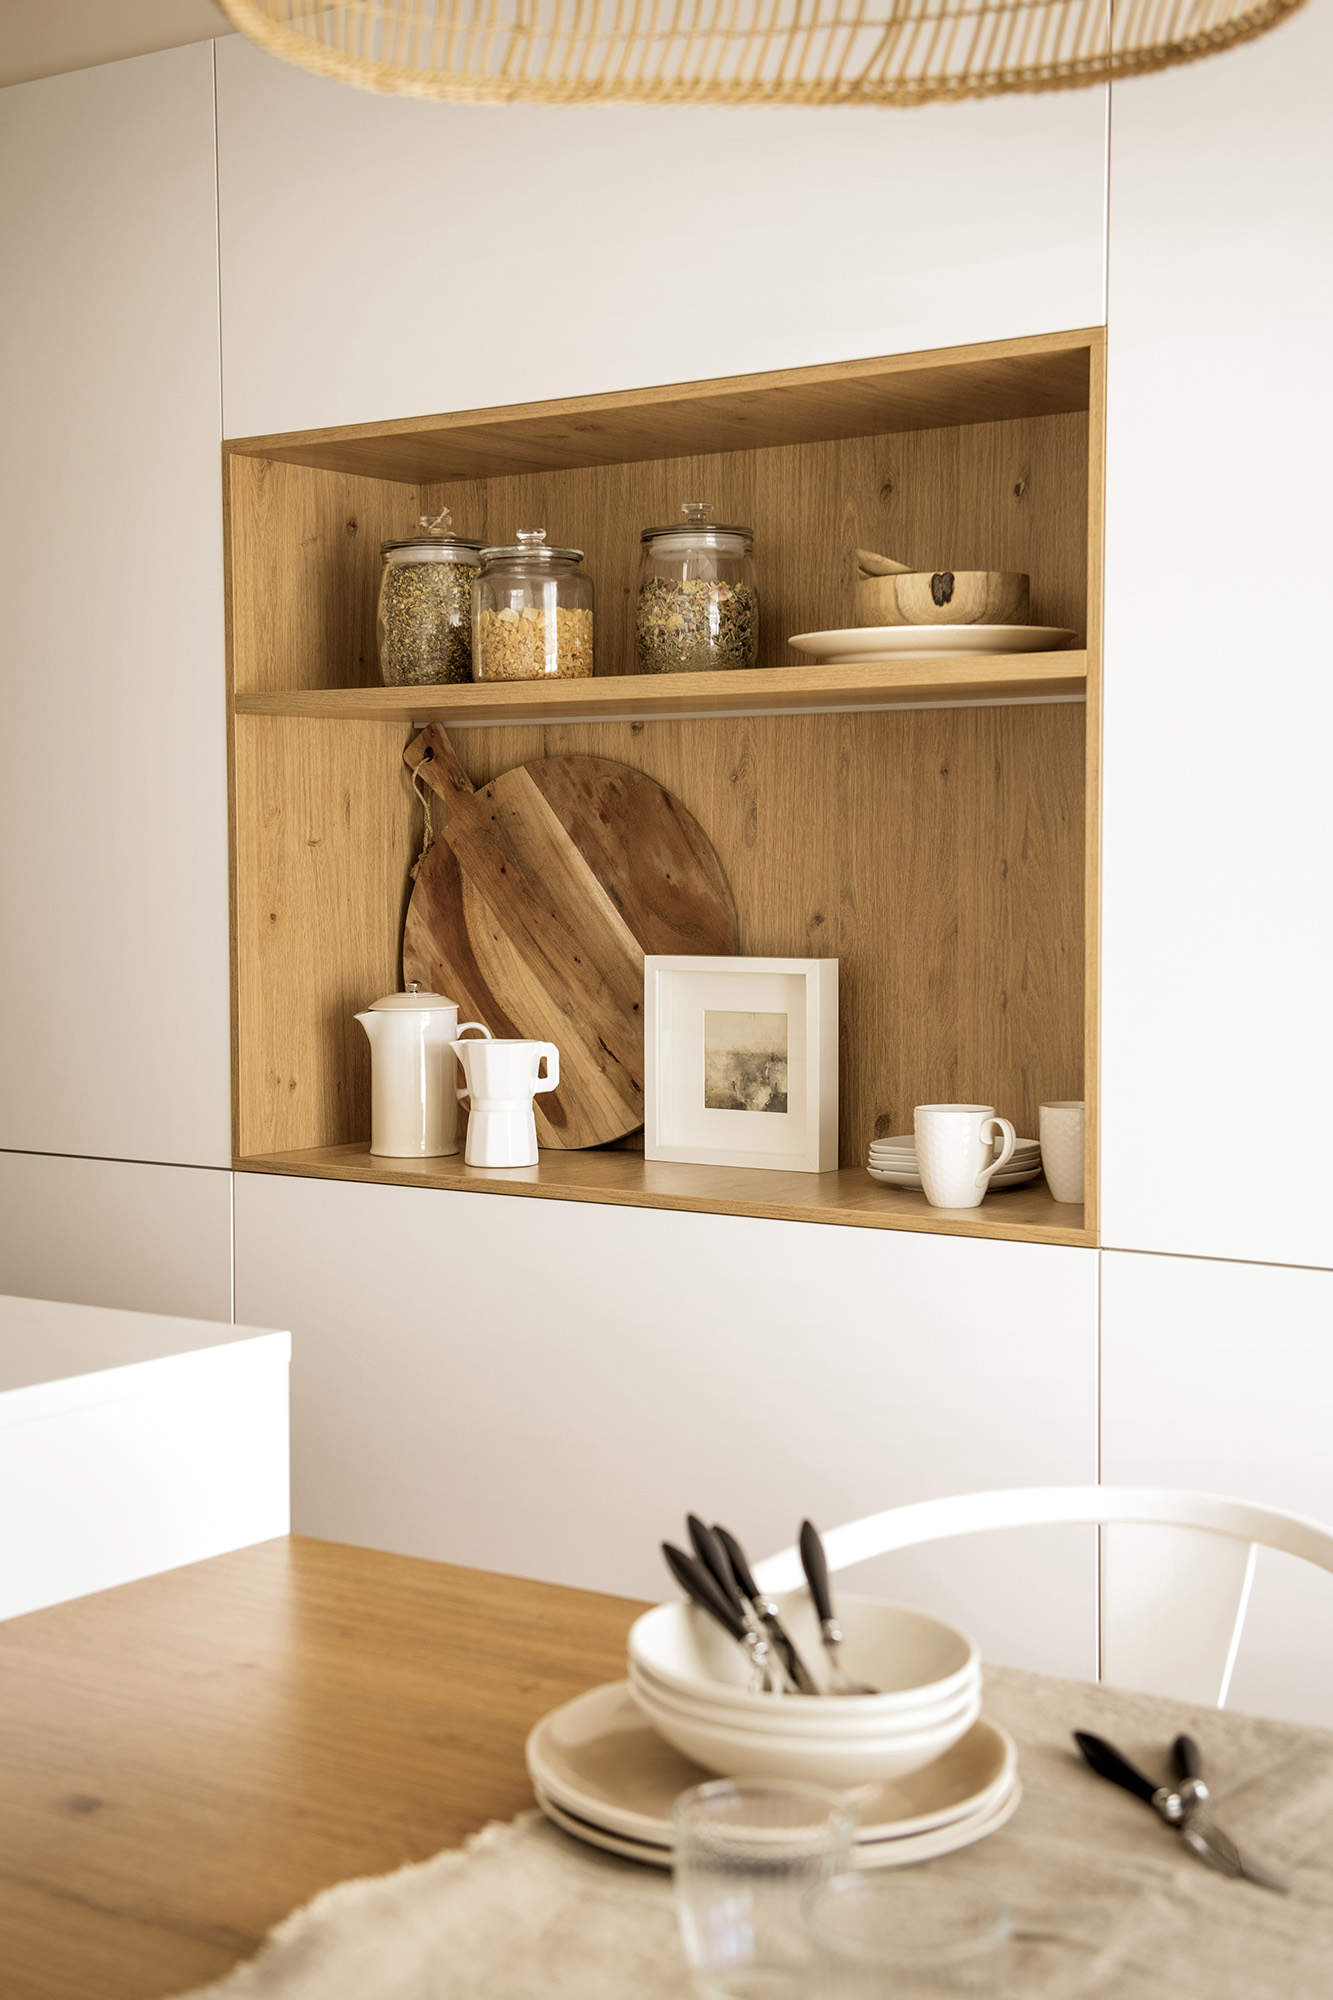 Detalle de un espacio desayunador en una cocina moderna